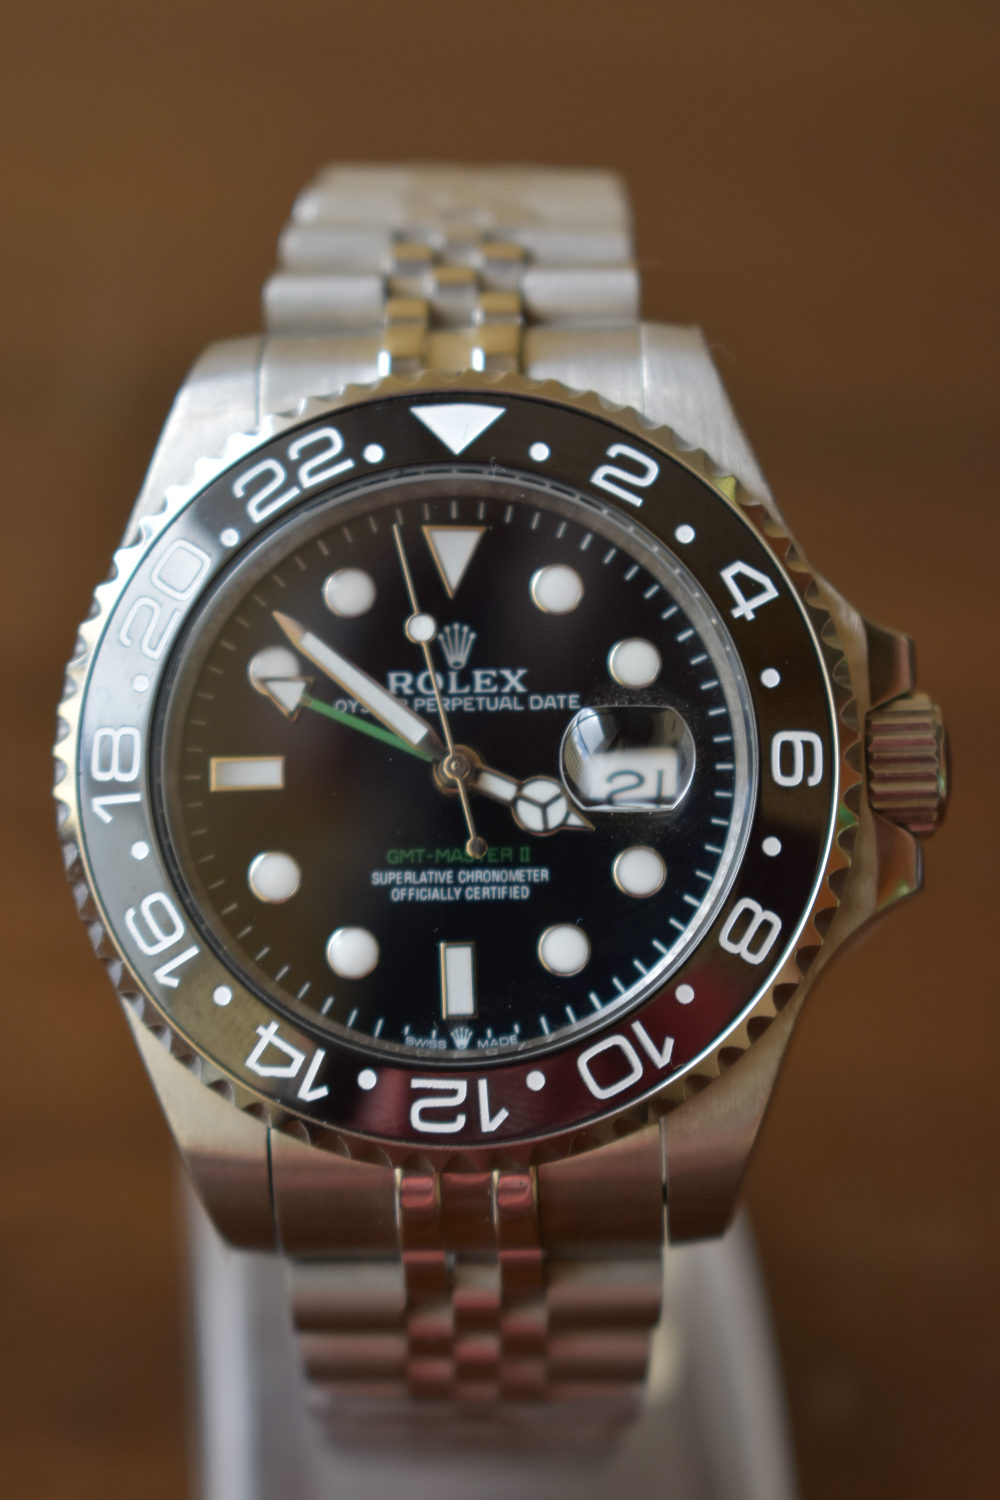 Rolex G M T Master II 116710 L N on Jubilee Bracelet Watch for sale in Nairobi,Kenya